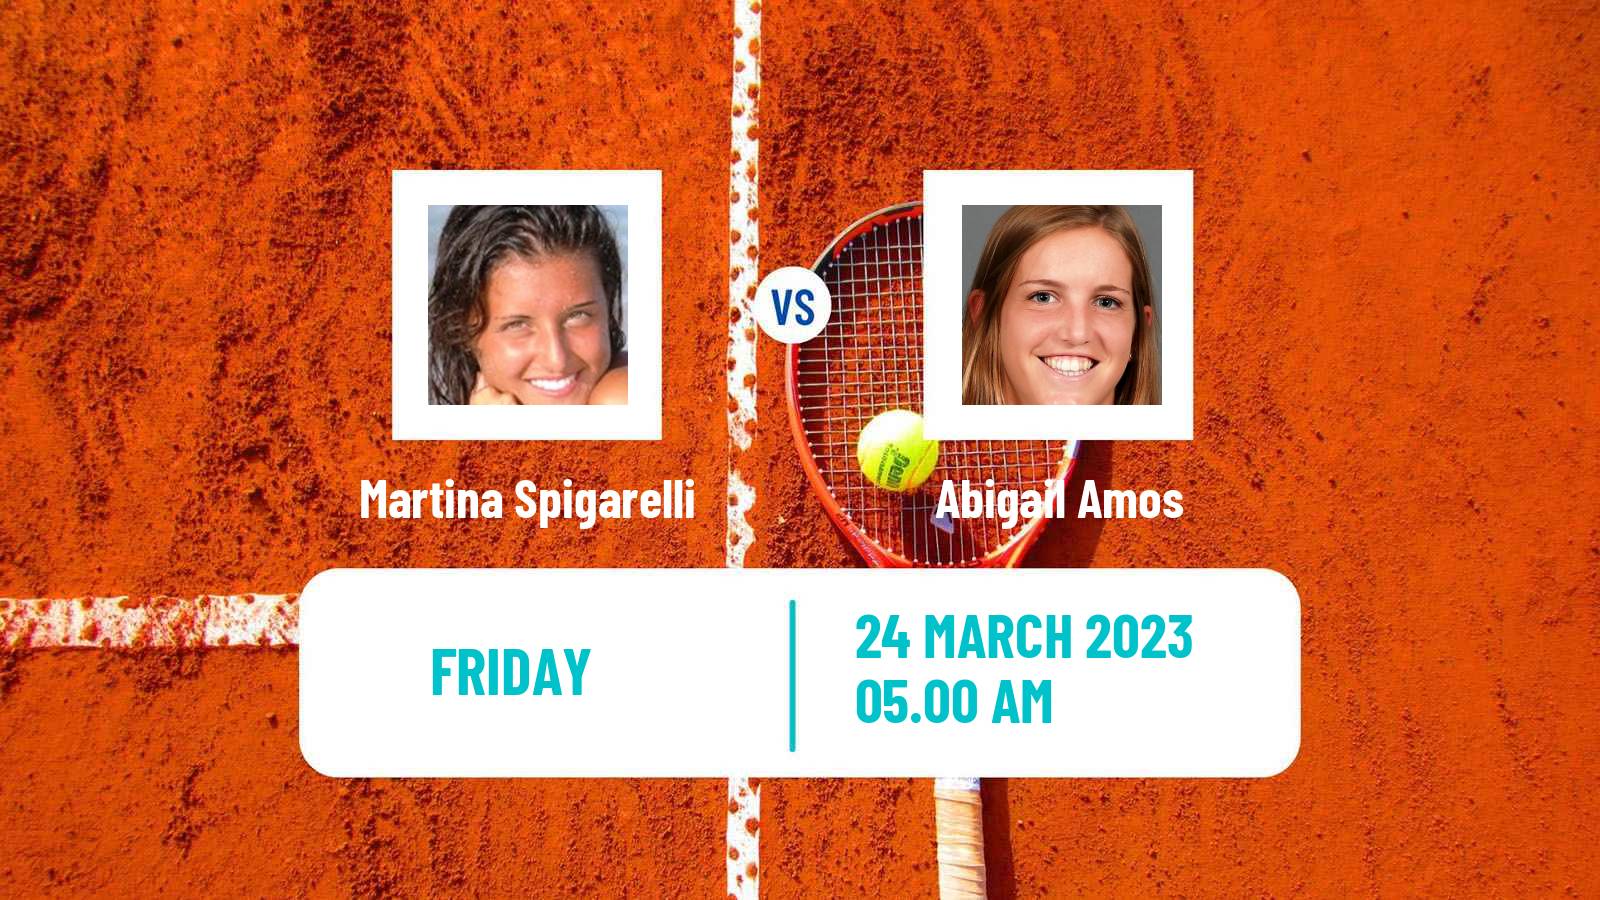 Tennis ITF Tournaments Martina Spigarelli - Abigail Amos